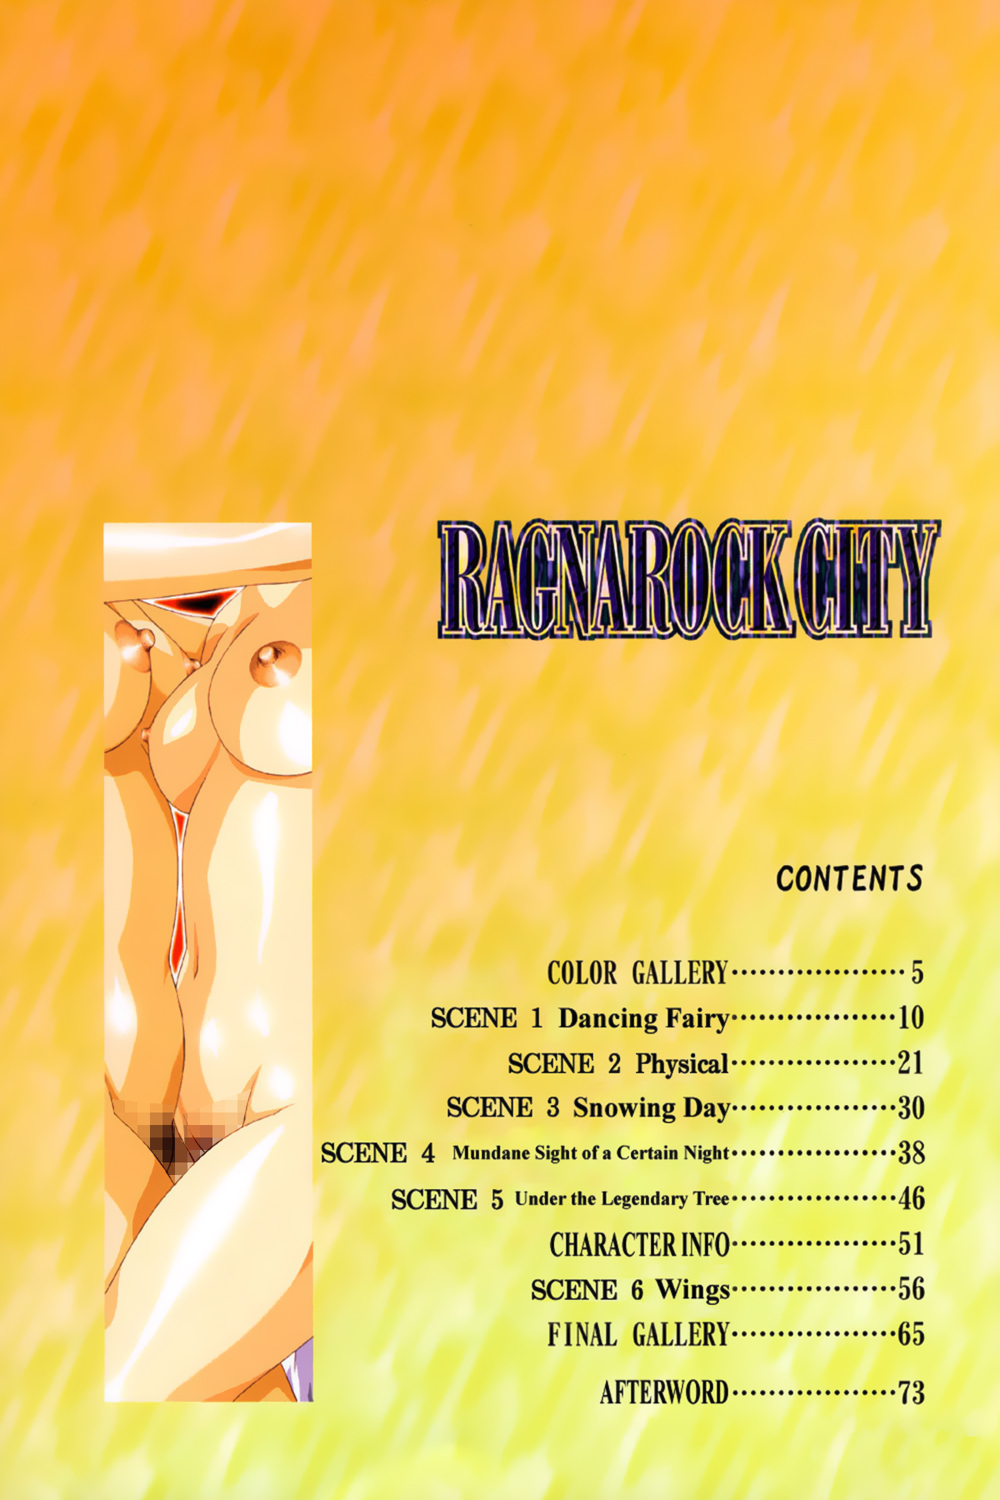 [Satoshi Urushihara] Ragnarock City [English] page 6 full